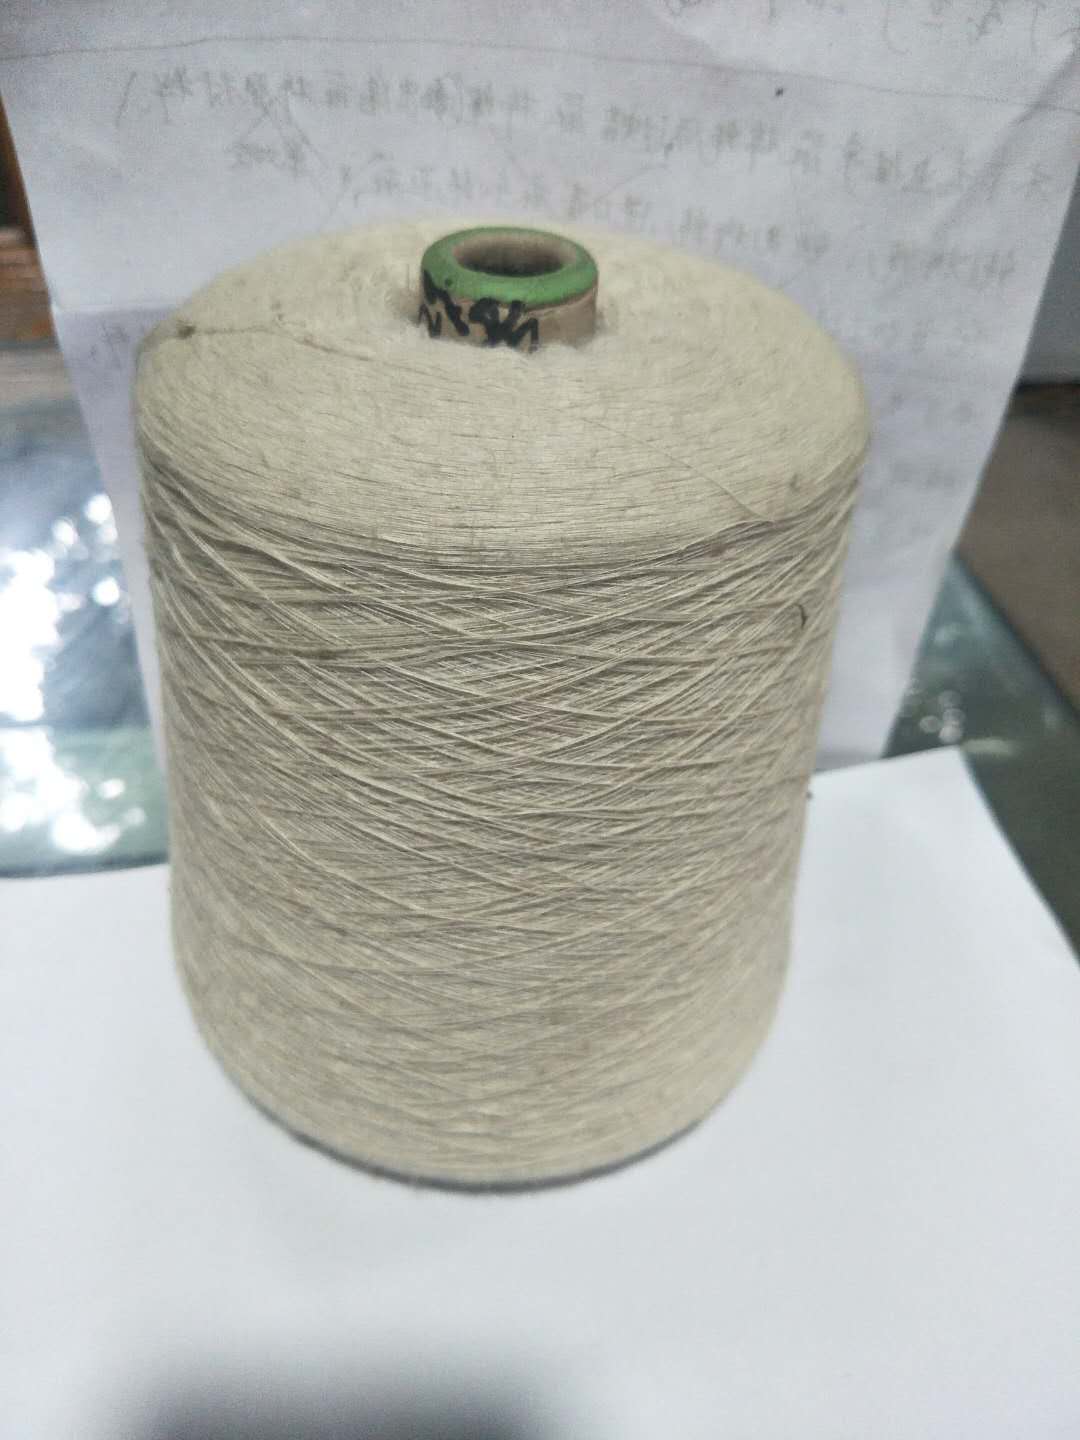 佛山市天然棉麻绳子厂家厂家供应胚色天然棉麻绳子各种粗细规格吊绳品种齐全可按客户需求定染色